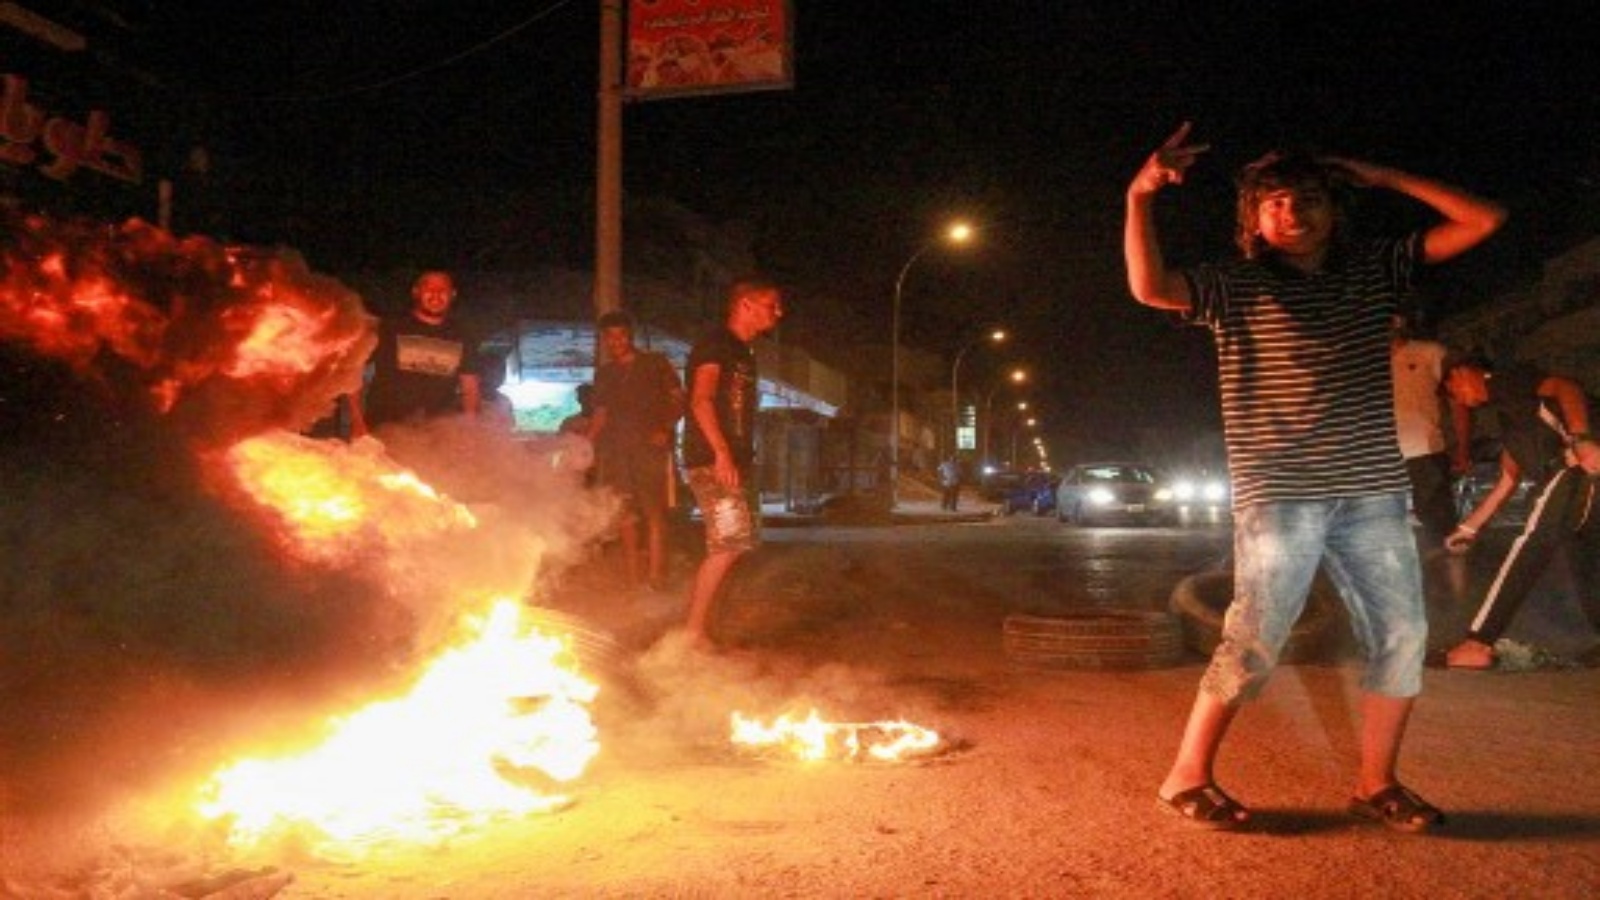 شباب ليبيون يغلقون طريقًا بإطارات محترقة في مدينة بنغازي الساحلية بشرق ليبيا في 12 سبتمبر 2020 ، احتجاجًا على سوء الخدمات العامة والظروف المعيشية